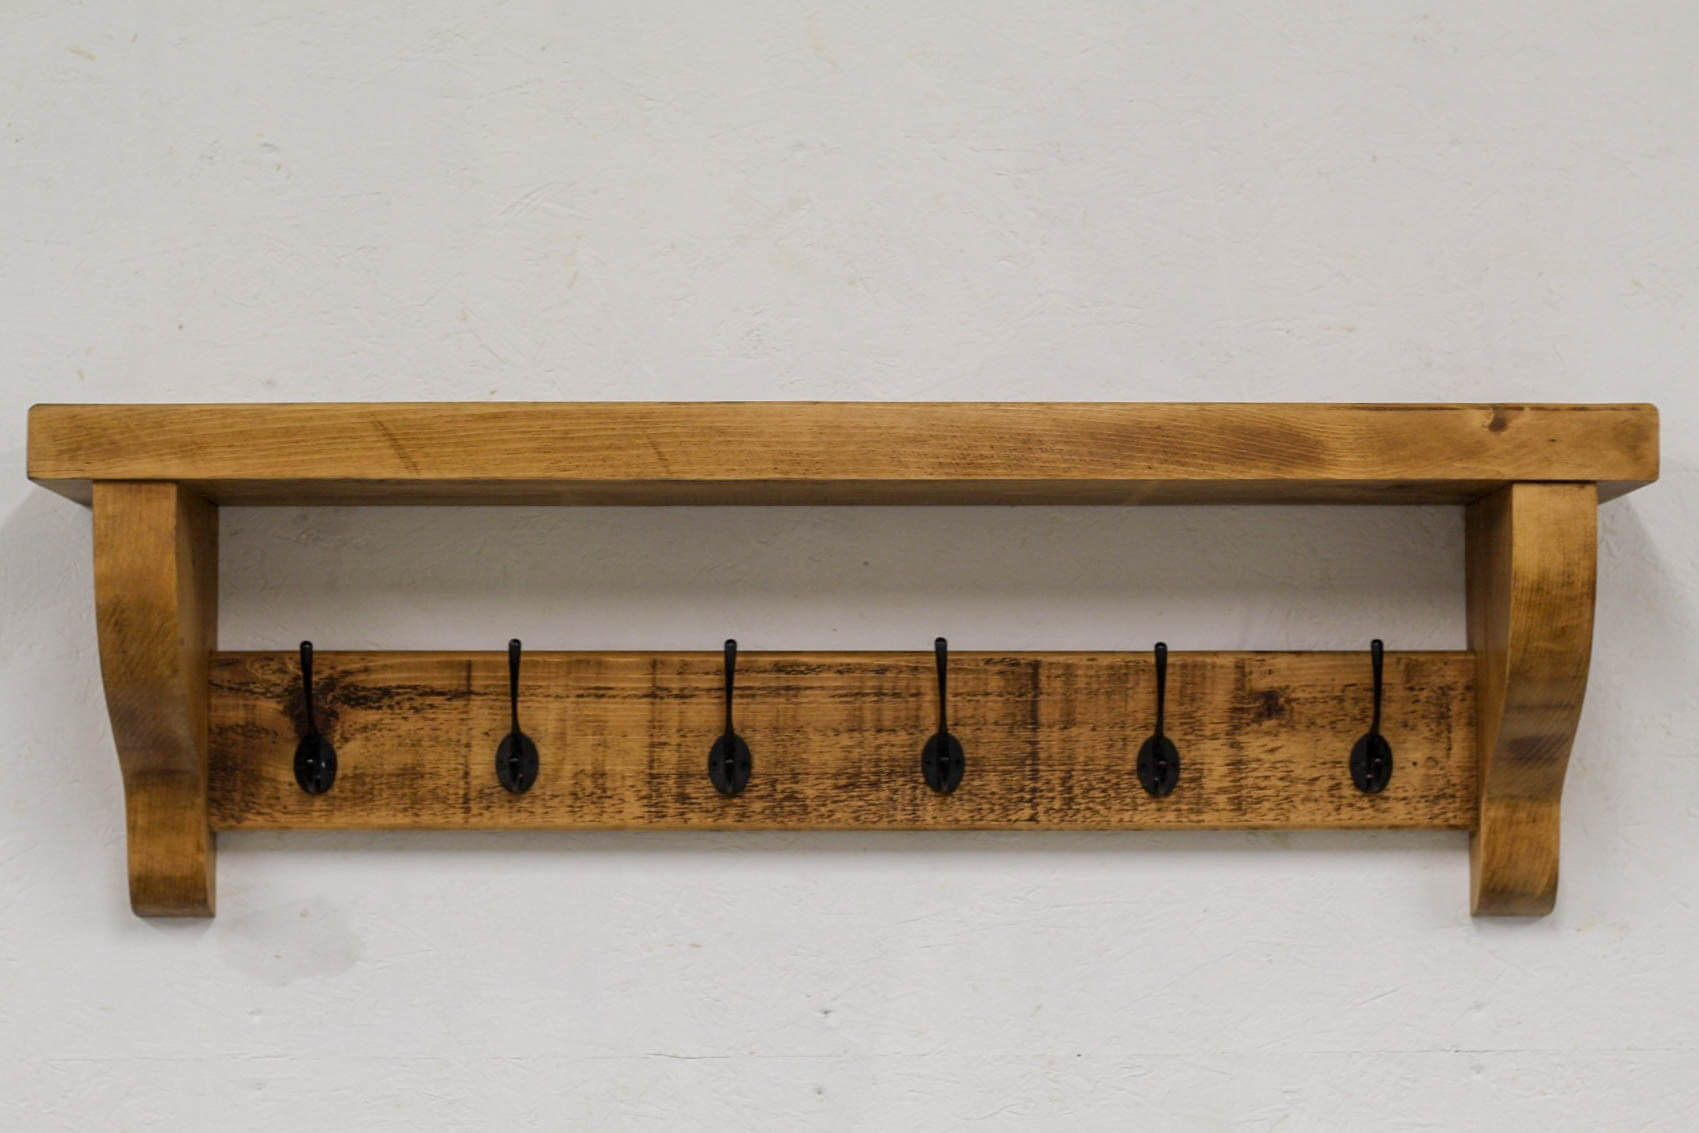 Wooden Industrial Rustic Coat Rack with Shelf – Industrial Evolution